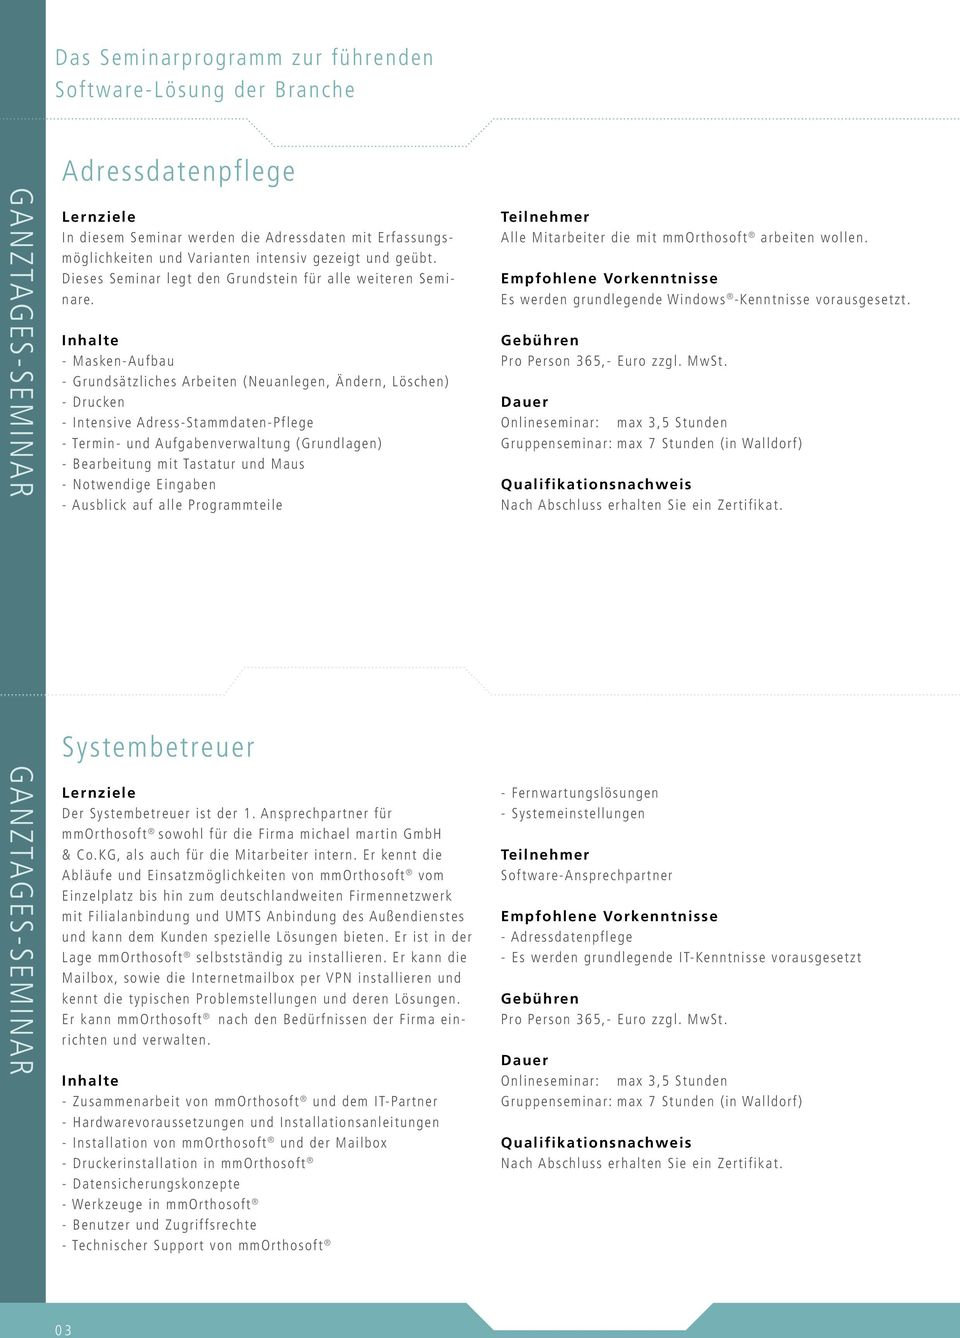 - Masken- Aufbau - Grundsätzliches Arbeiten ( Neuanlegen, Ändern, Löschen) - Drucken - Intensive Adress- Stammdaten- Pflege - Termin- und Aufgabenverwaltung ( Grundlagen) - Bearbeitung mit Tastatur